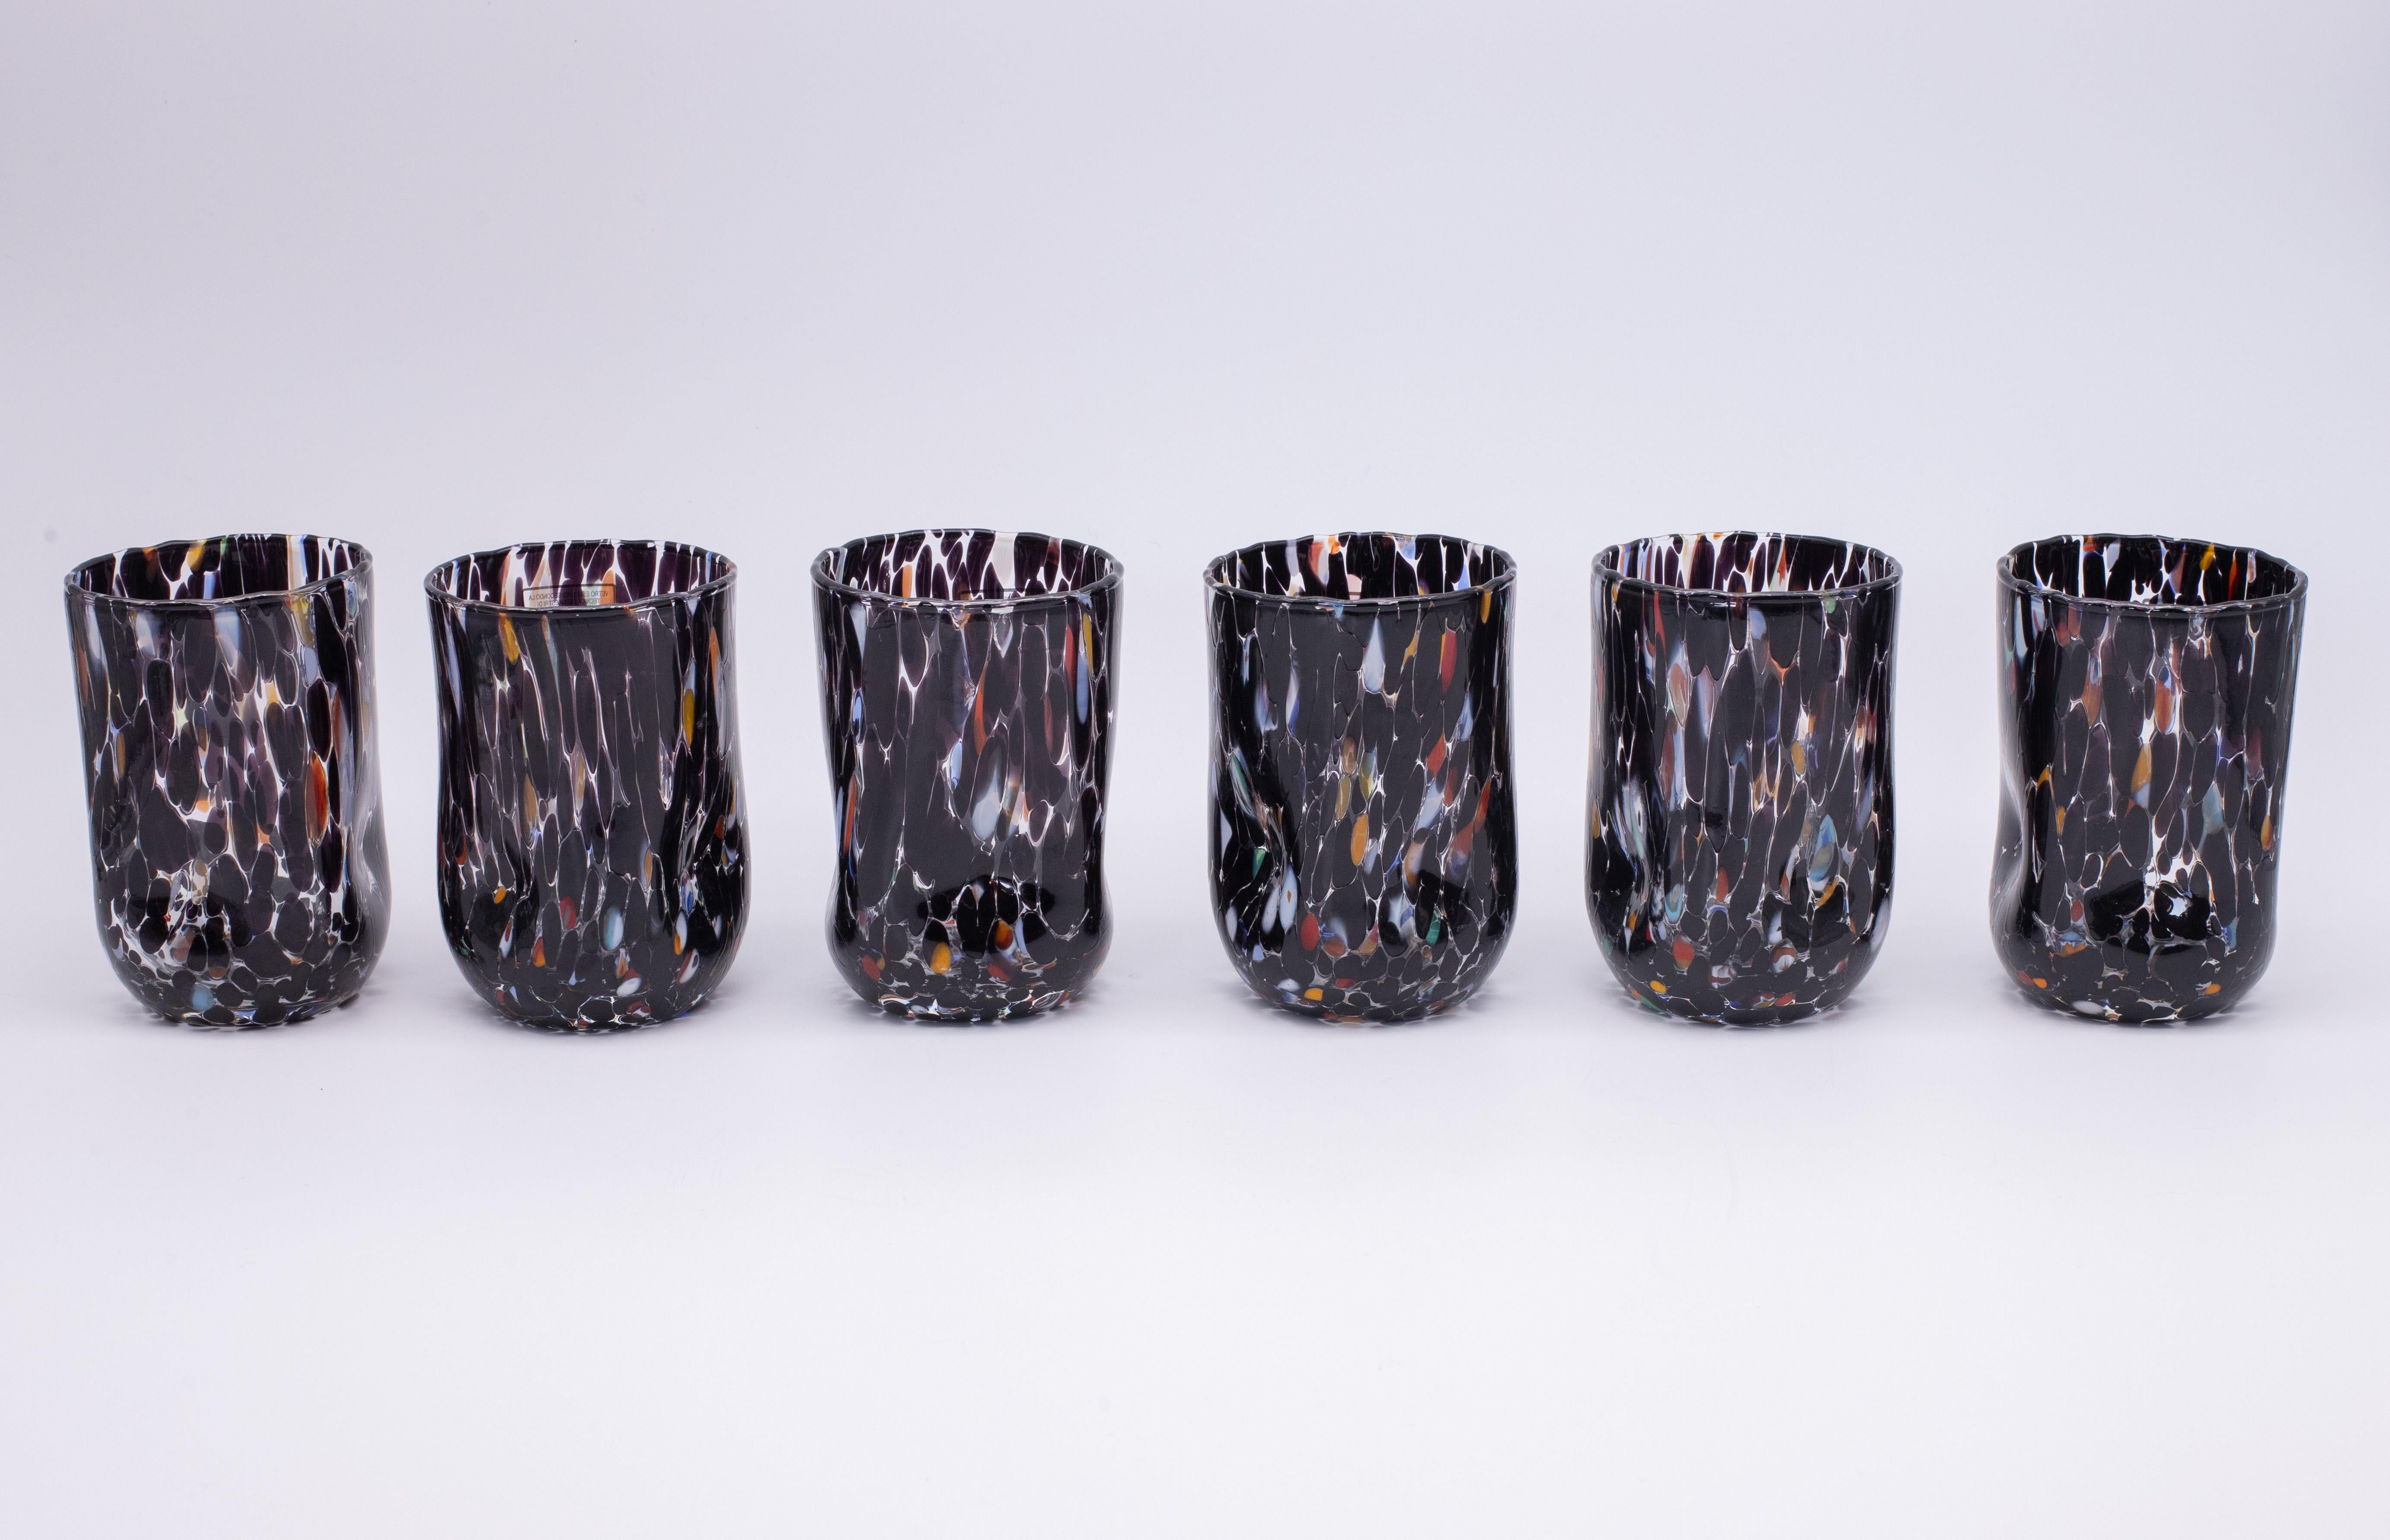 Set aus sechs Wasser-, Trink- und Weingläsern Farbe Schwarz - Murano Glas - Made in Italy.

Diese individuellen Murano-Gläser sind vom klassischen 